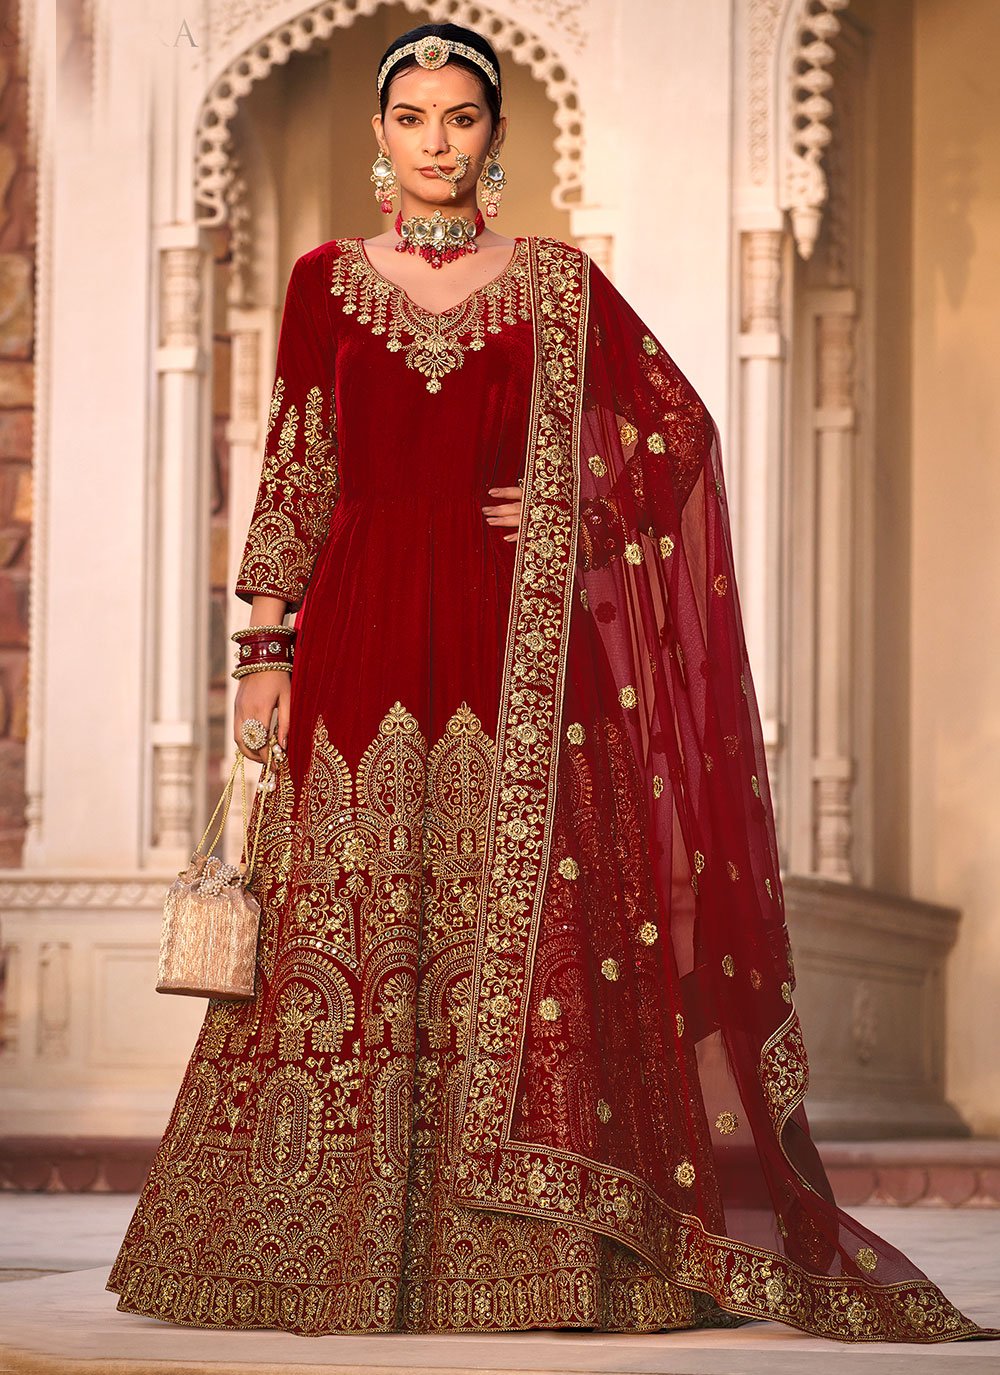 Bridal Suit / Wedding Dress Red Colour - Women - 1747822794